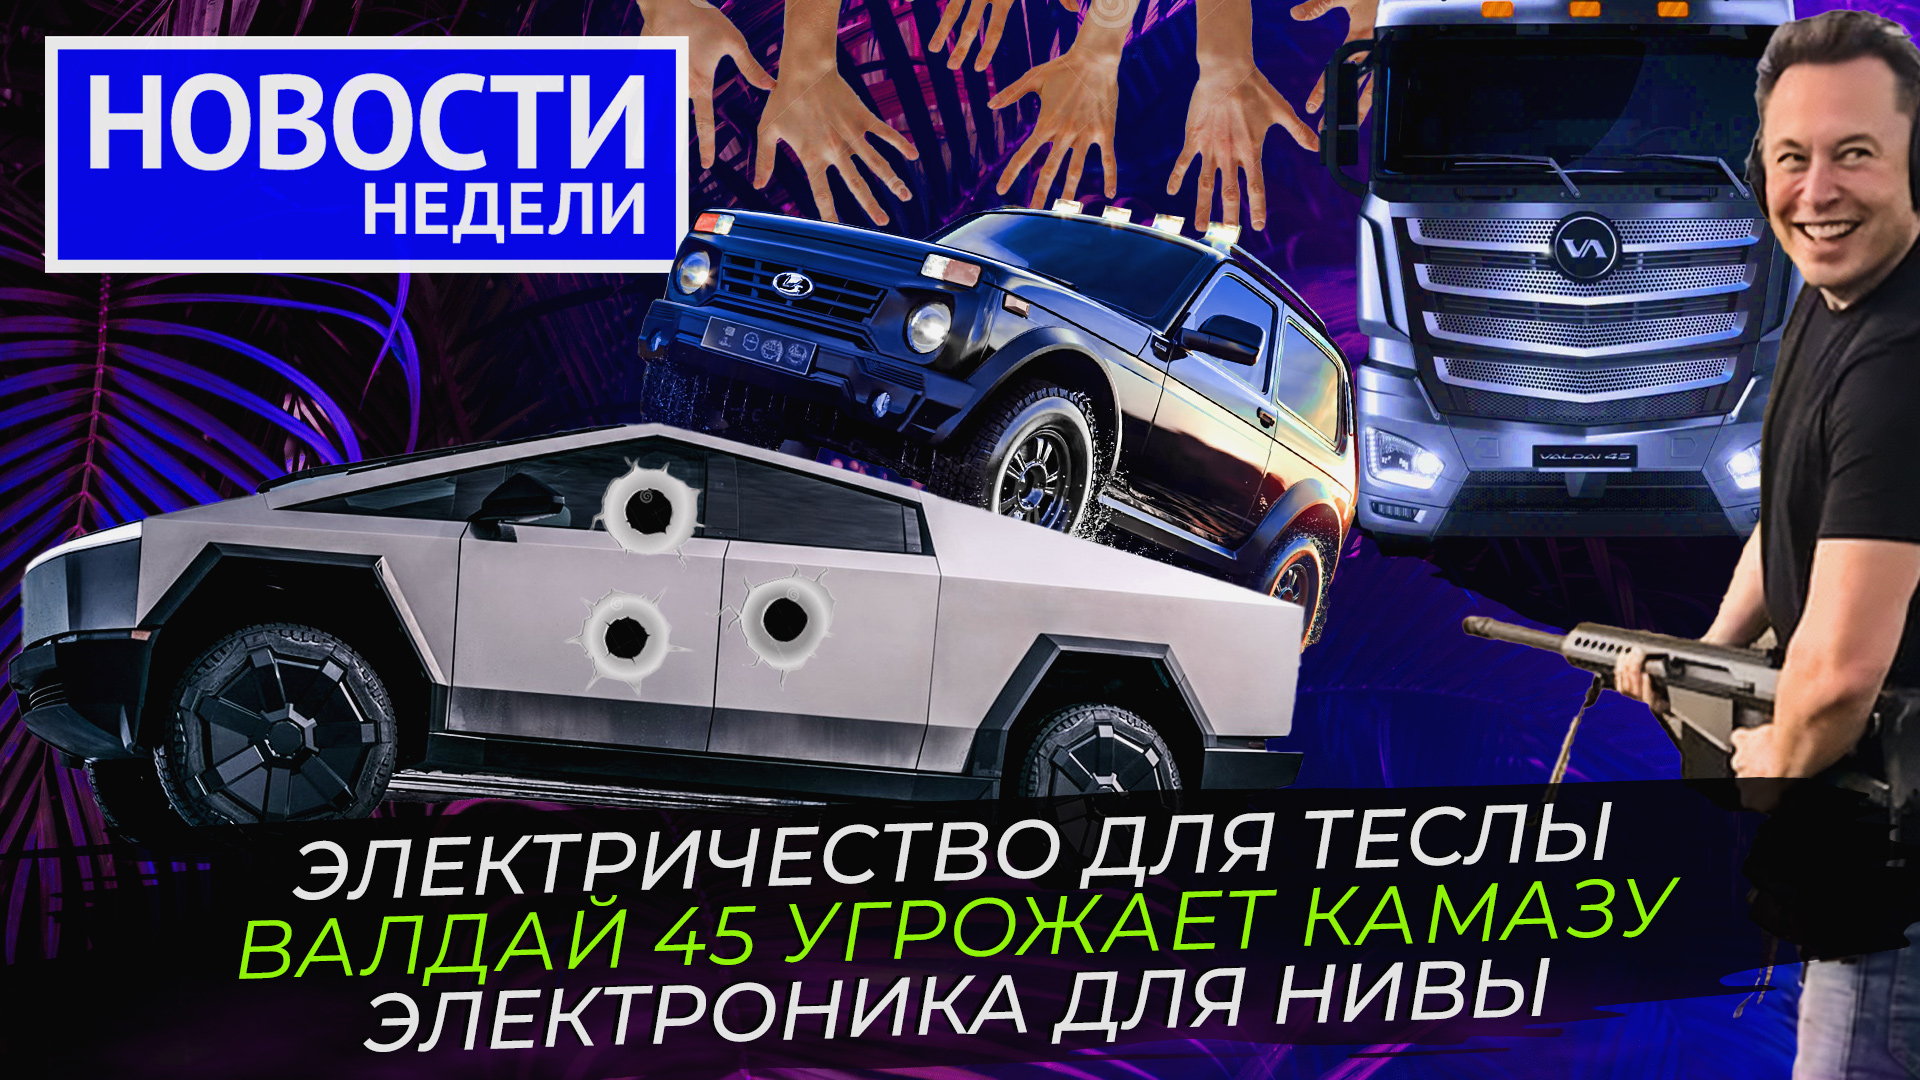 Бум на рынке грузовиков, КамАЗ рвётся в лидеры, Lada возвращает электронику ? «Новости недели» №248